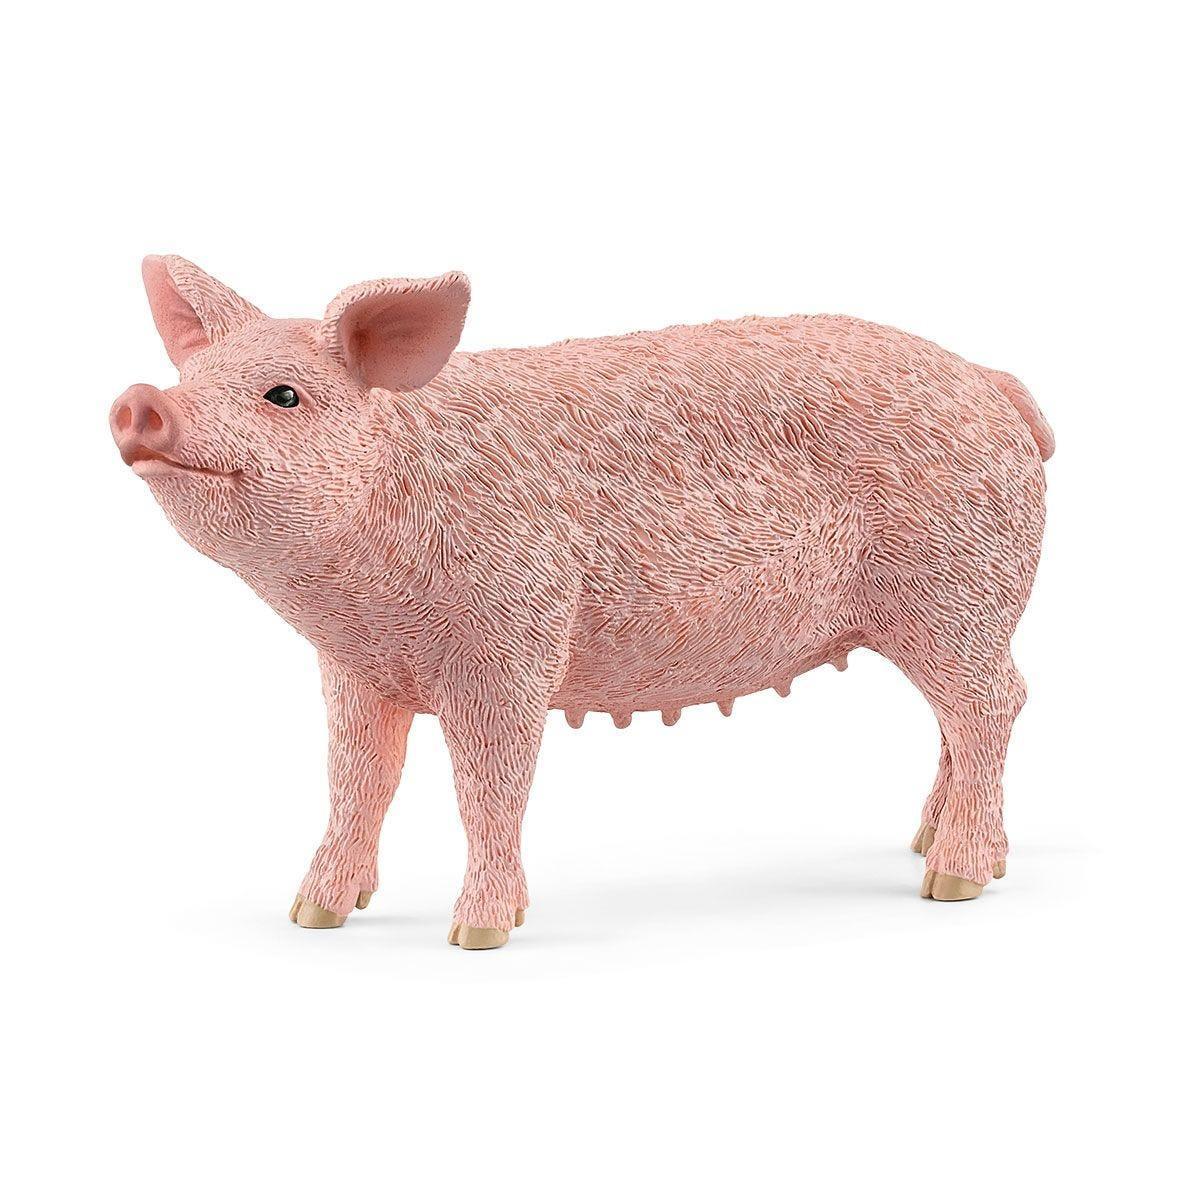 Schleich - Pig Animal Figurine